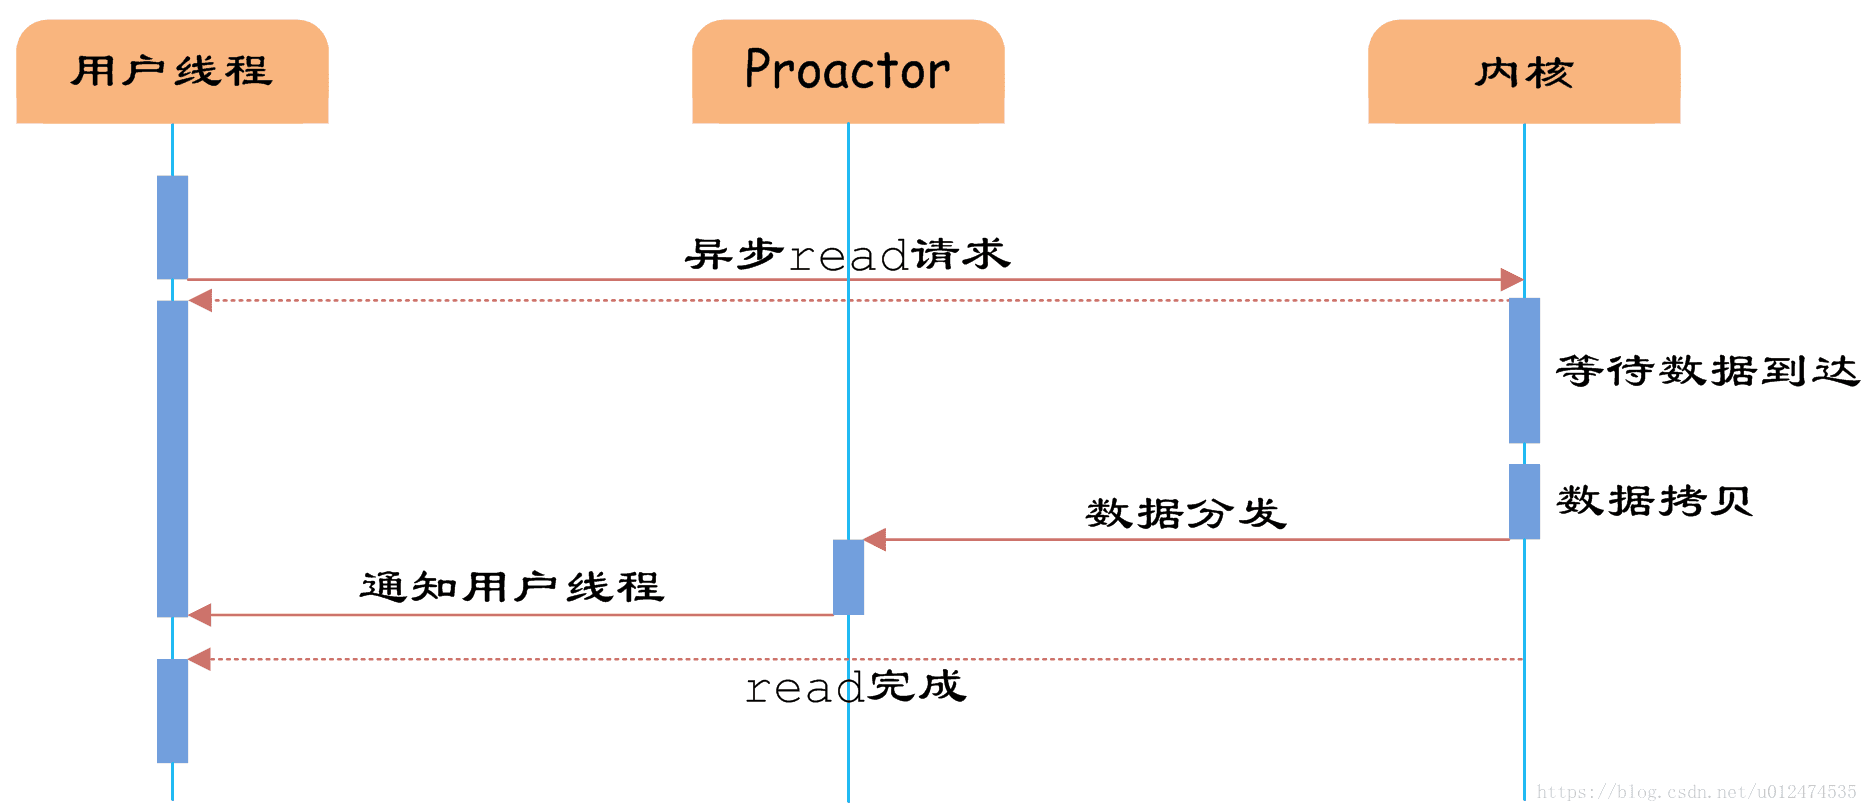 proactor